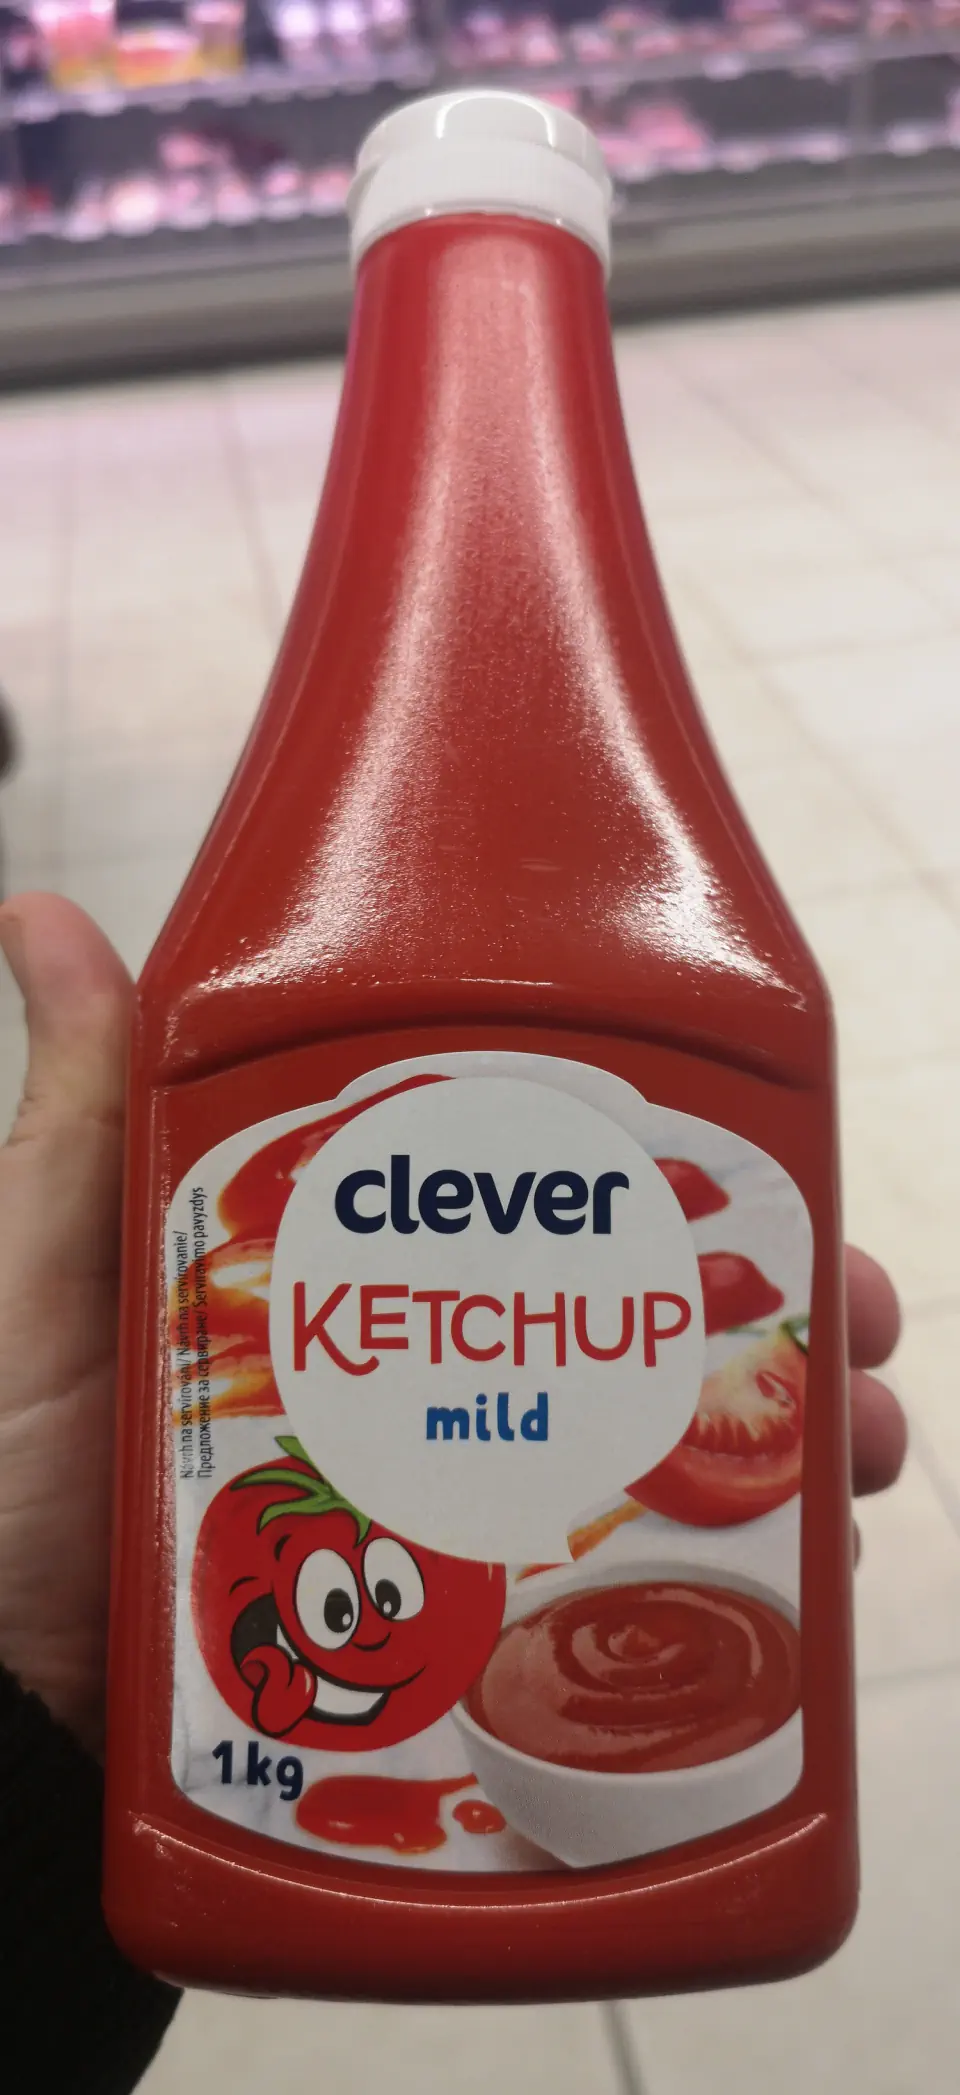 Clever kethup mild